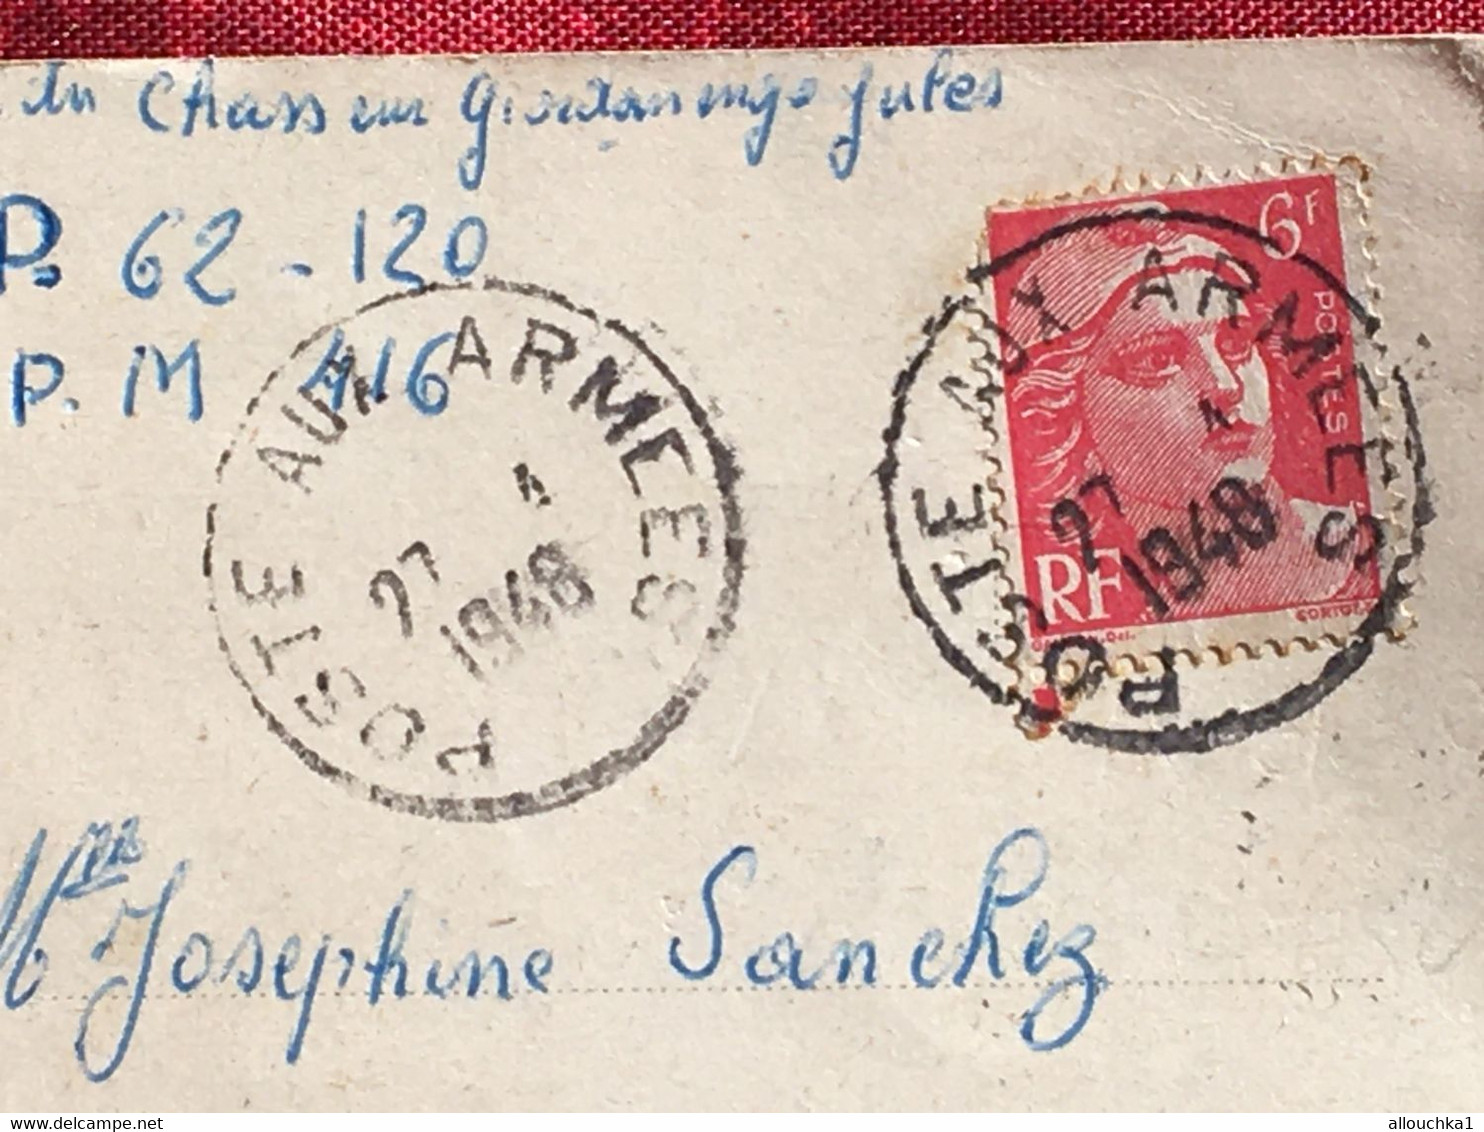 Reutlingen Rhin Danube 11é RCA-Régiment De Chasseurs D'Afrique-Lettre D'Amour-SP 62.120-BPM 415-CAD Postes Armées-Chérie - Military Postage Stamps